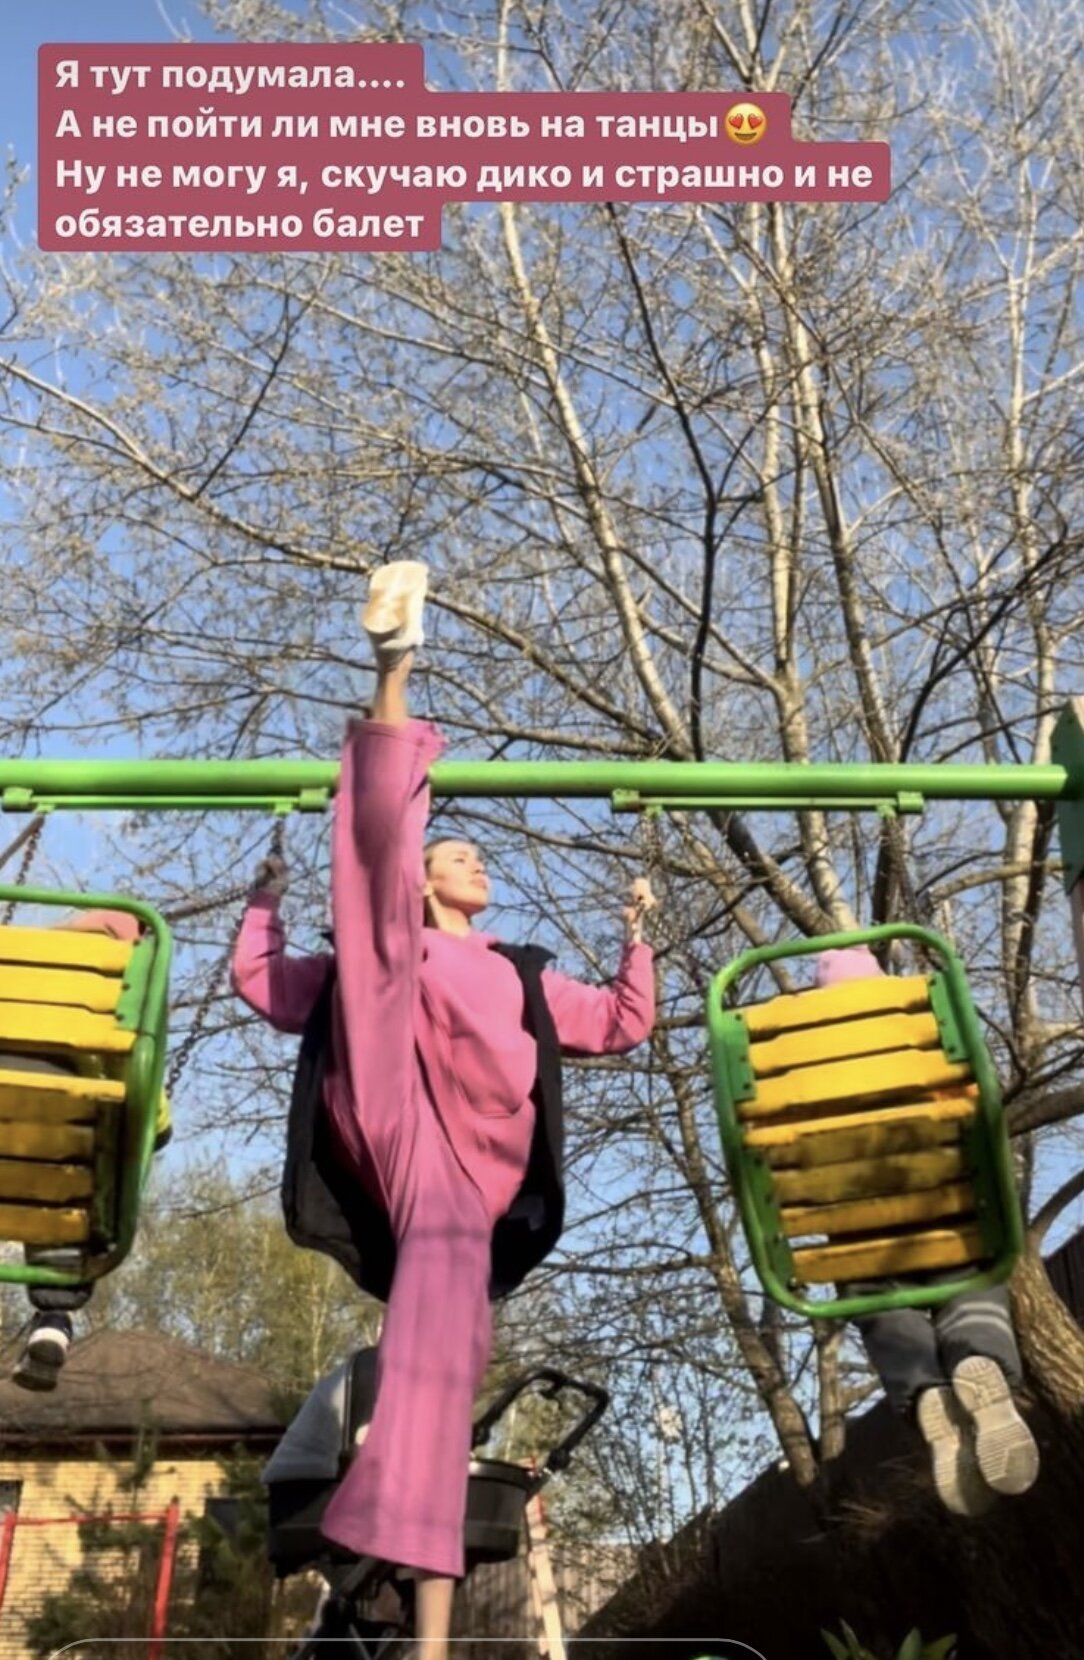 Анастасия Костенко похвасталась растяжкой, задрав ногу на детской площадке